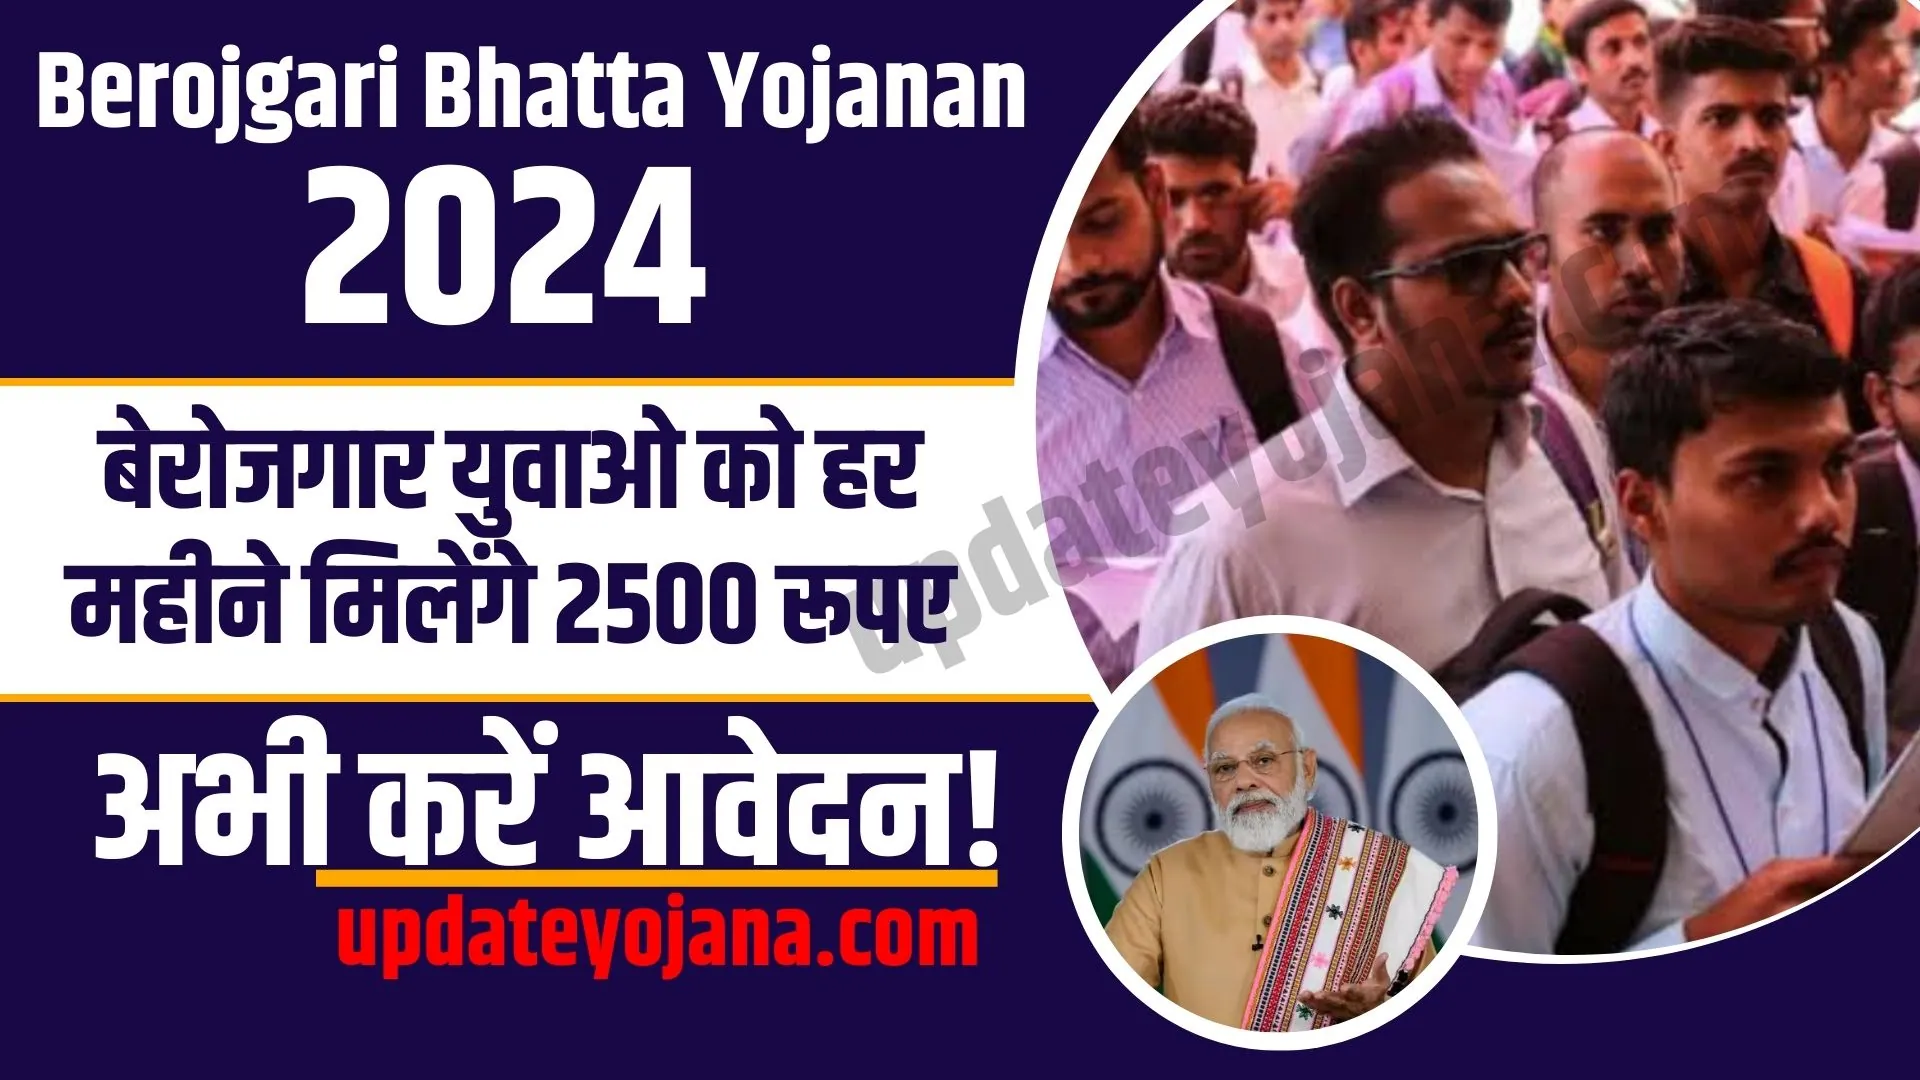 Berojgari Bhatta Yojanan 2024